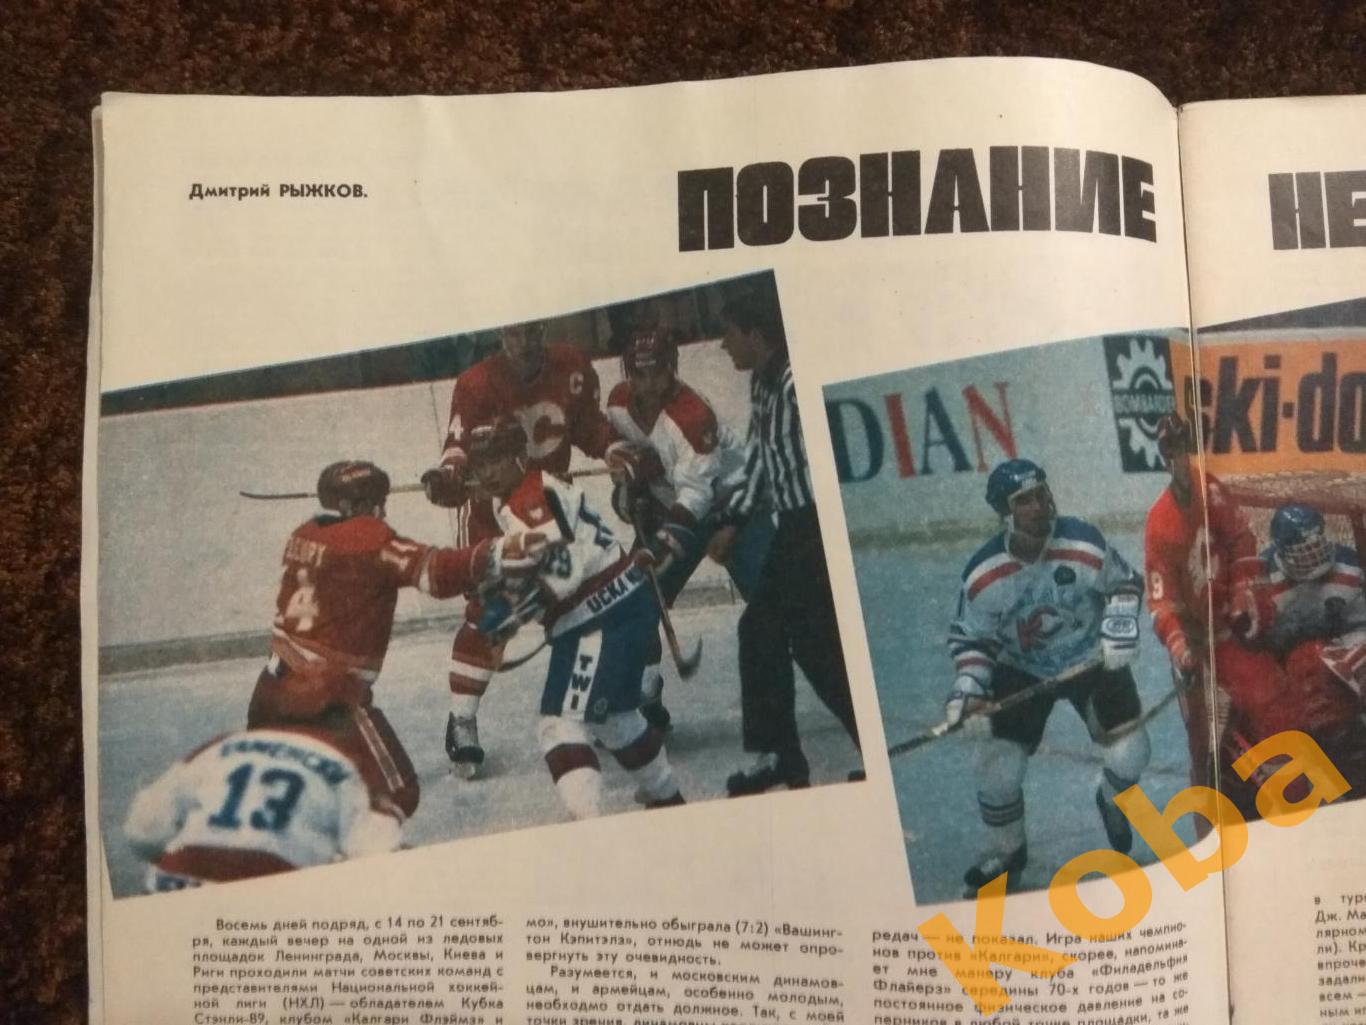 Хоккей Суперсерия 1989 Вашингтон Калгари Карелин Загайнов Лютый ФиС 1989 №12